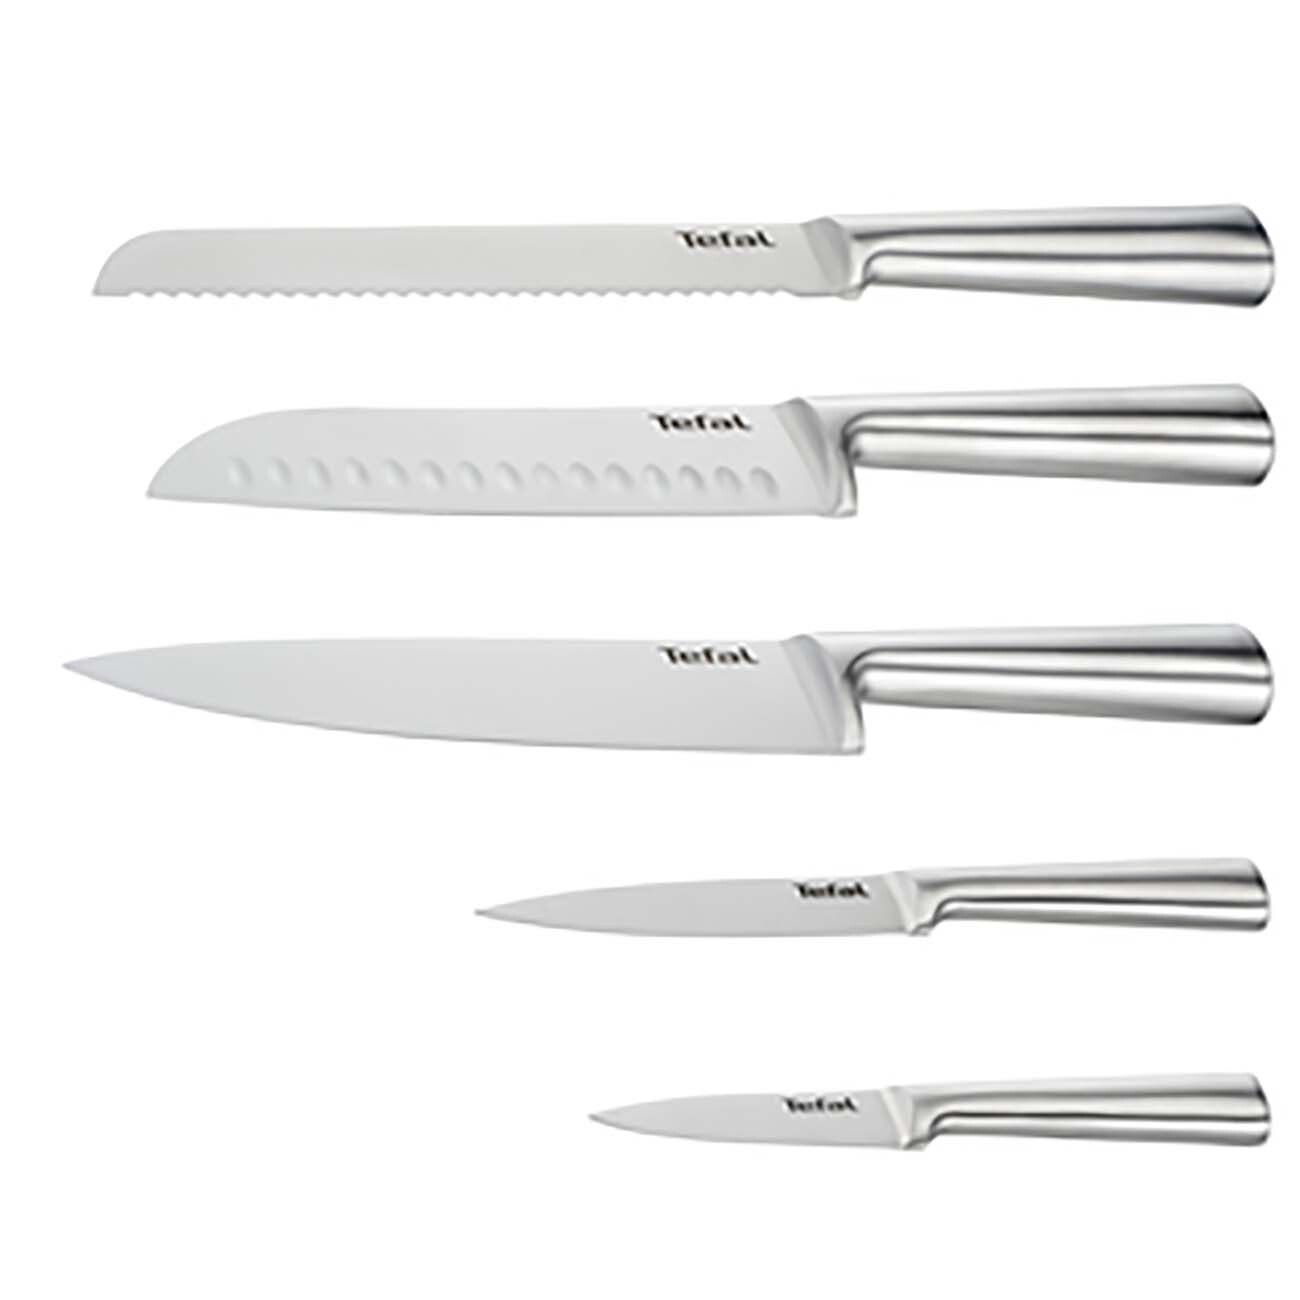 Набор кухонных ножей tefal. Набор кухонных ножей Tefal expertise (5 ножей) k121s575. Набор кухонных ножей Tefal expertise (3 ножа) k121s375. Набор кухонных ножей Tefal expertise, 5 шт (k121s575). Набор из 4 ножей для стейка k121s414 expertise Tefal.